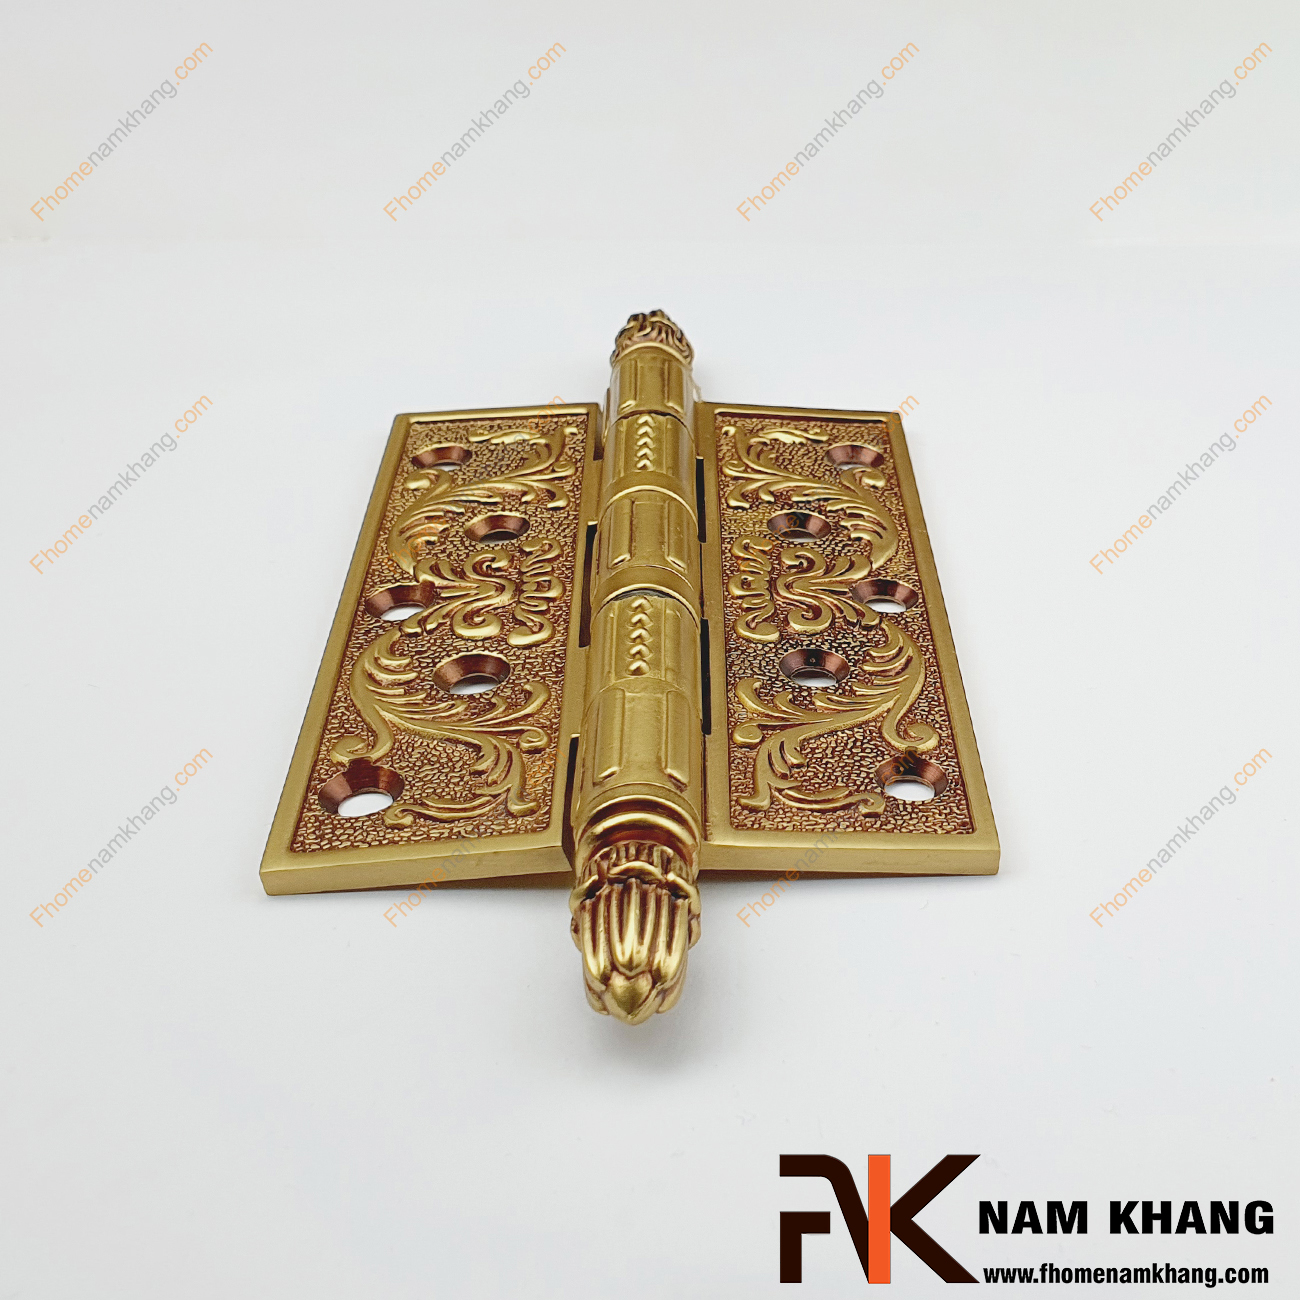 Bản lề cửa đồng vàng hoa văn cổ điển NK604-13DC là một mẫu bản lề cửa lớn cao cấp từ chất liệu đồng. Sản phẩm được thiết kế có hoa văn đối xứng dạng cổ điển rất cao cấp.